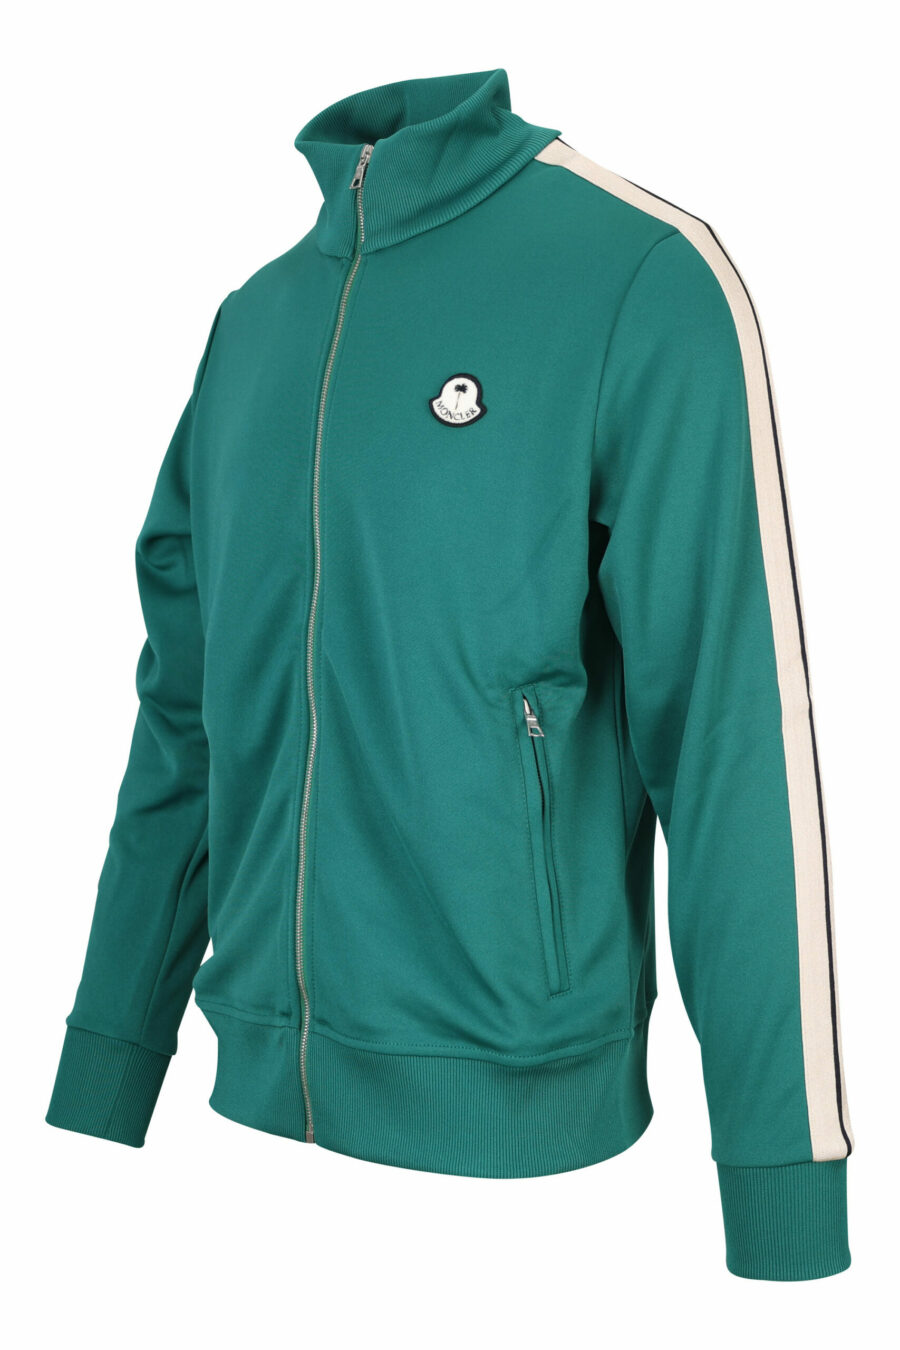 Grünes Sweatshirt mit Reißverschluss und weißen Seitenstreifen - 8057151109160 1 skaliert